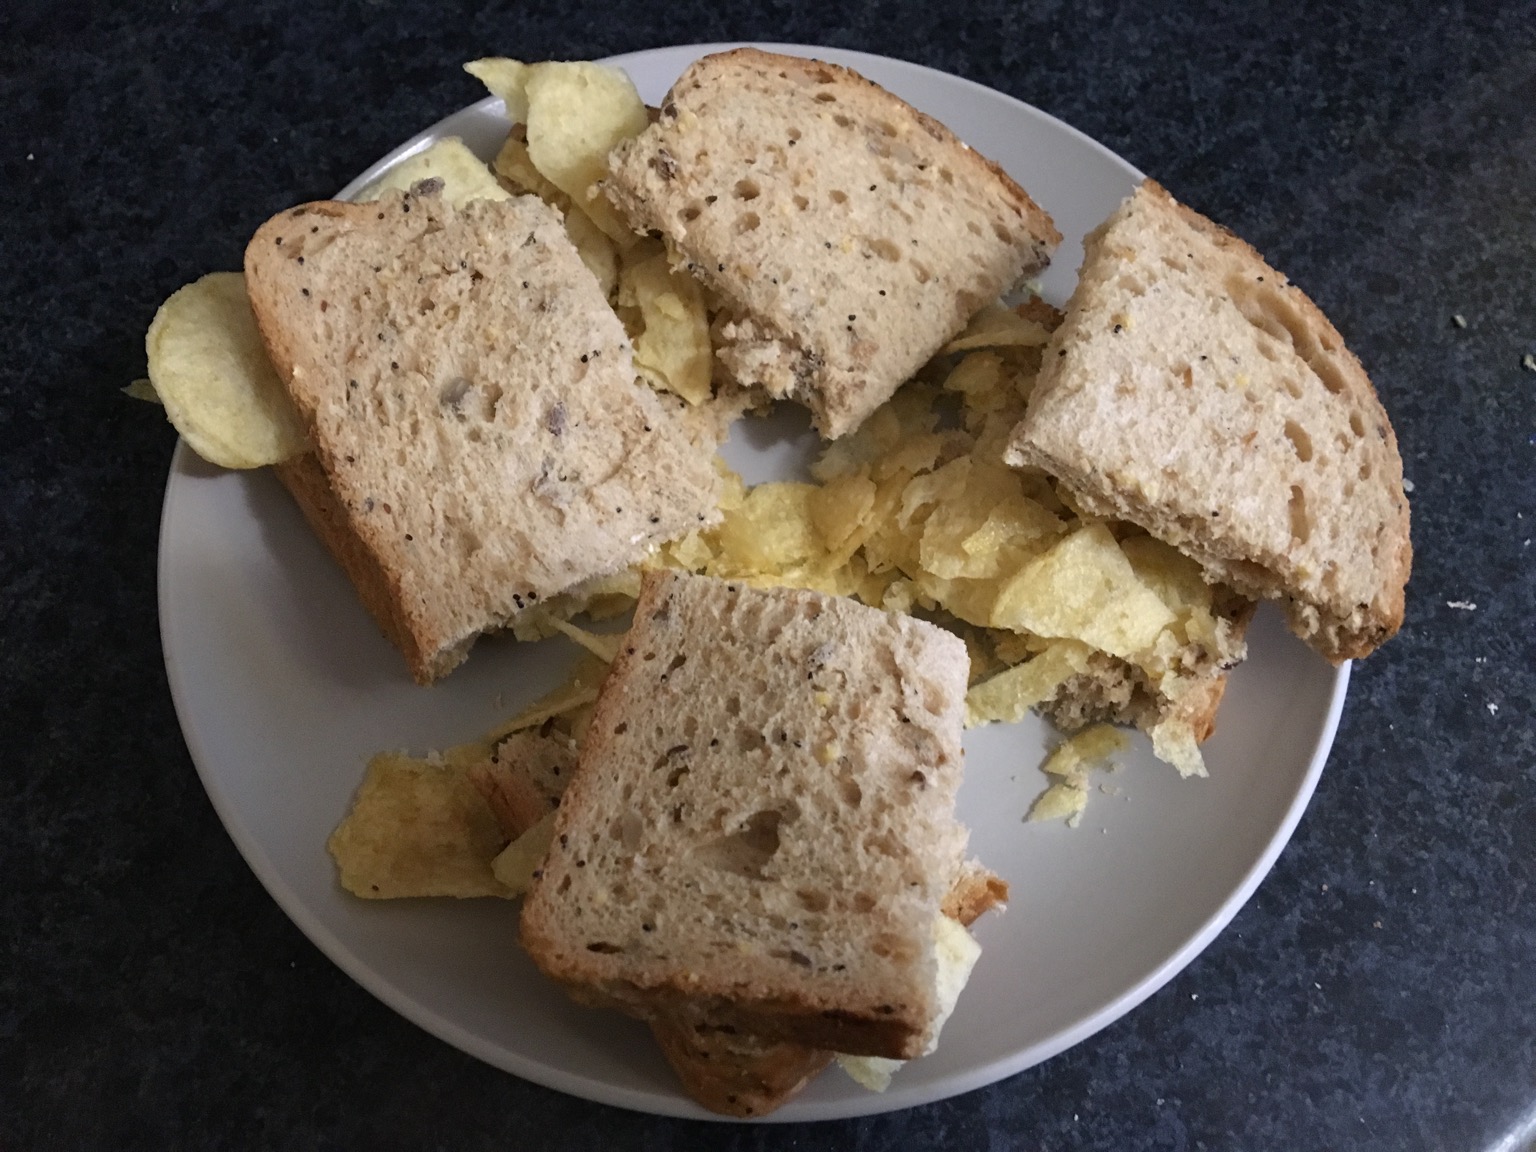 Brown crisp sandwich cut up into quarters